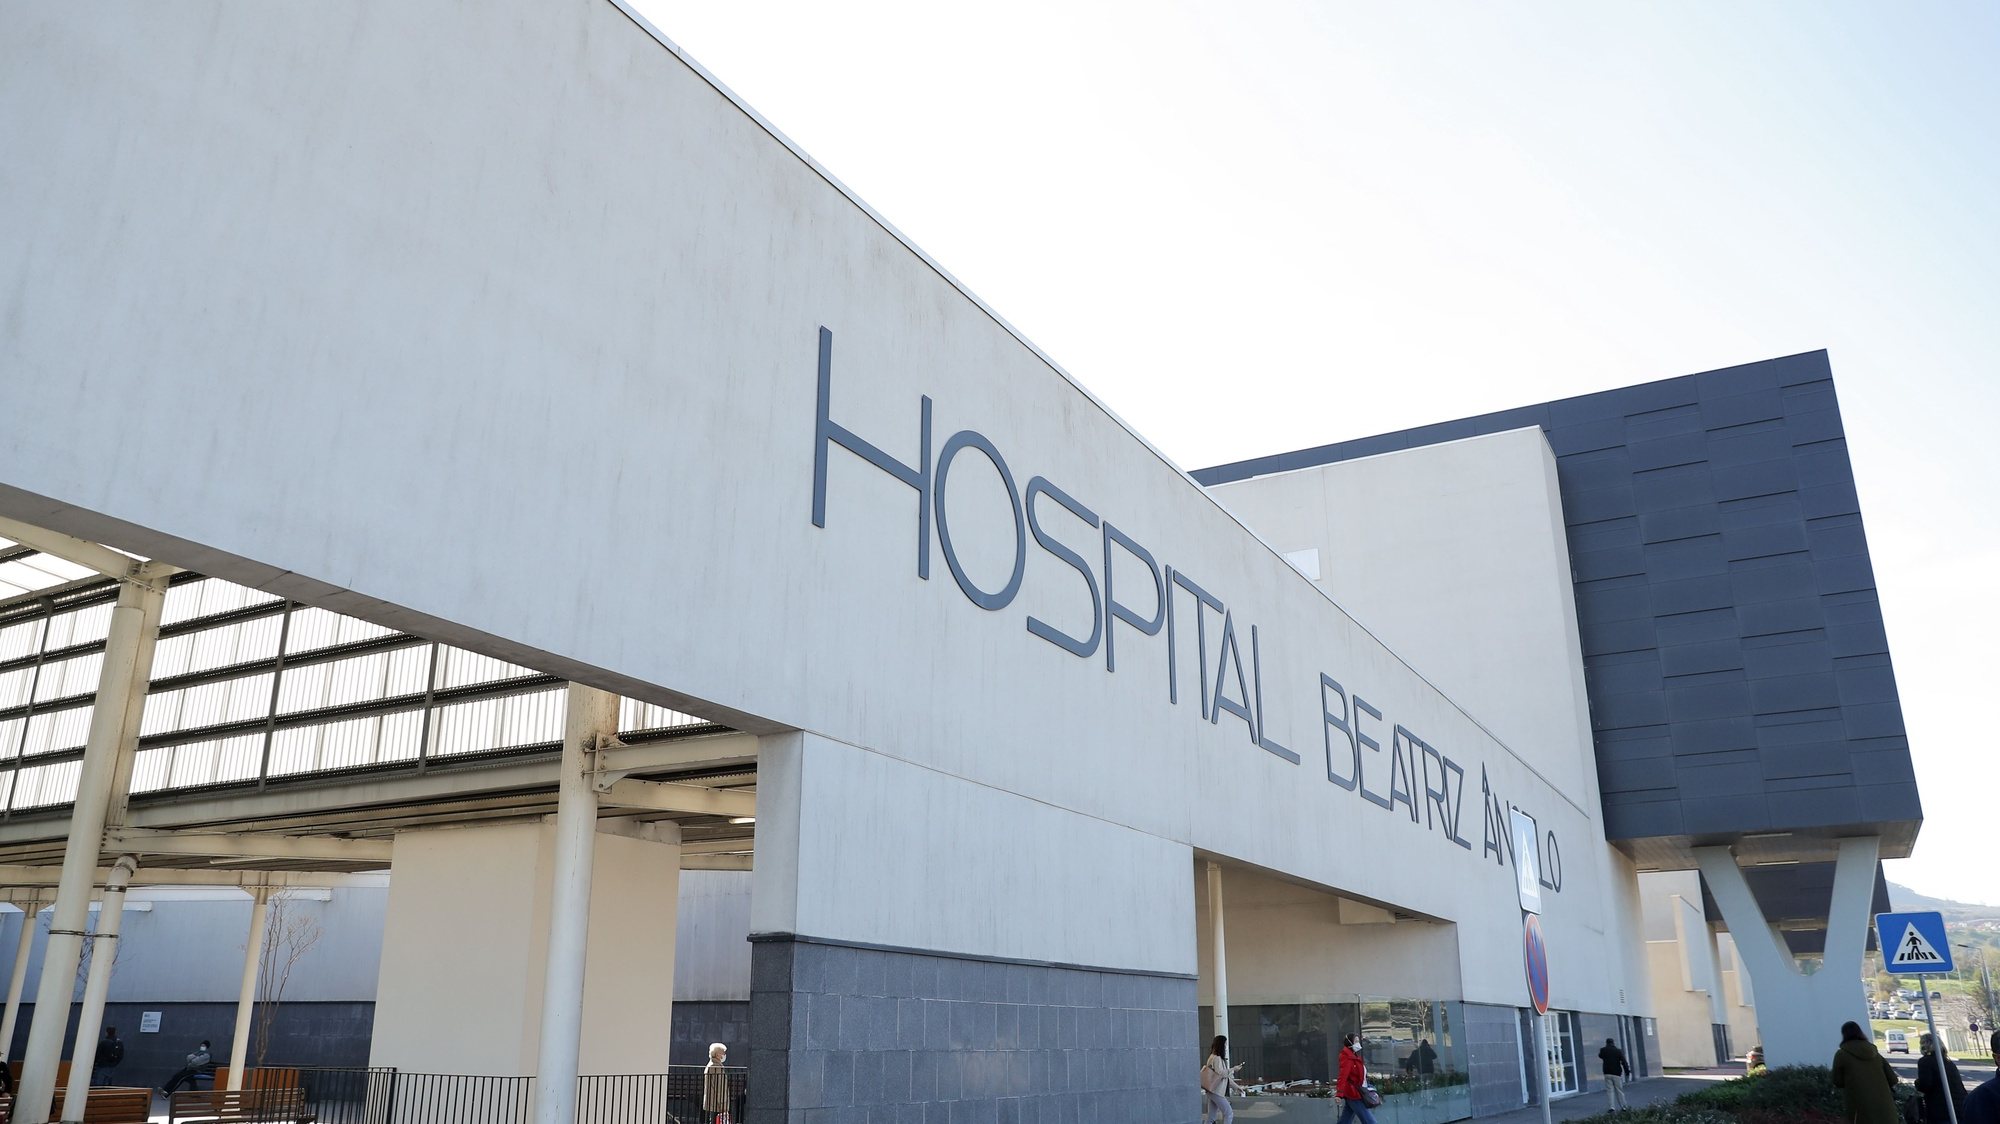 Nos hospitais São José, Garcia de Orta, em Almada, e Beatriz Ângelo, Loures, o tempo médio de espera era de duas horas e 33 minutos